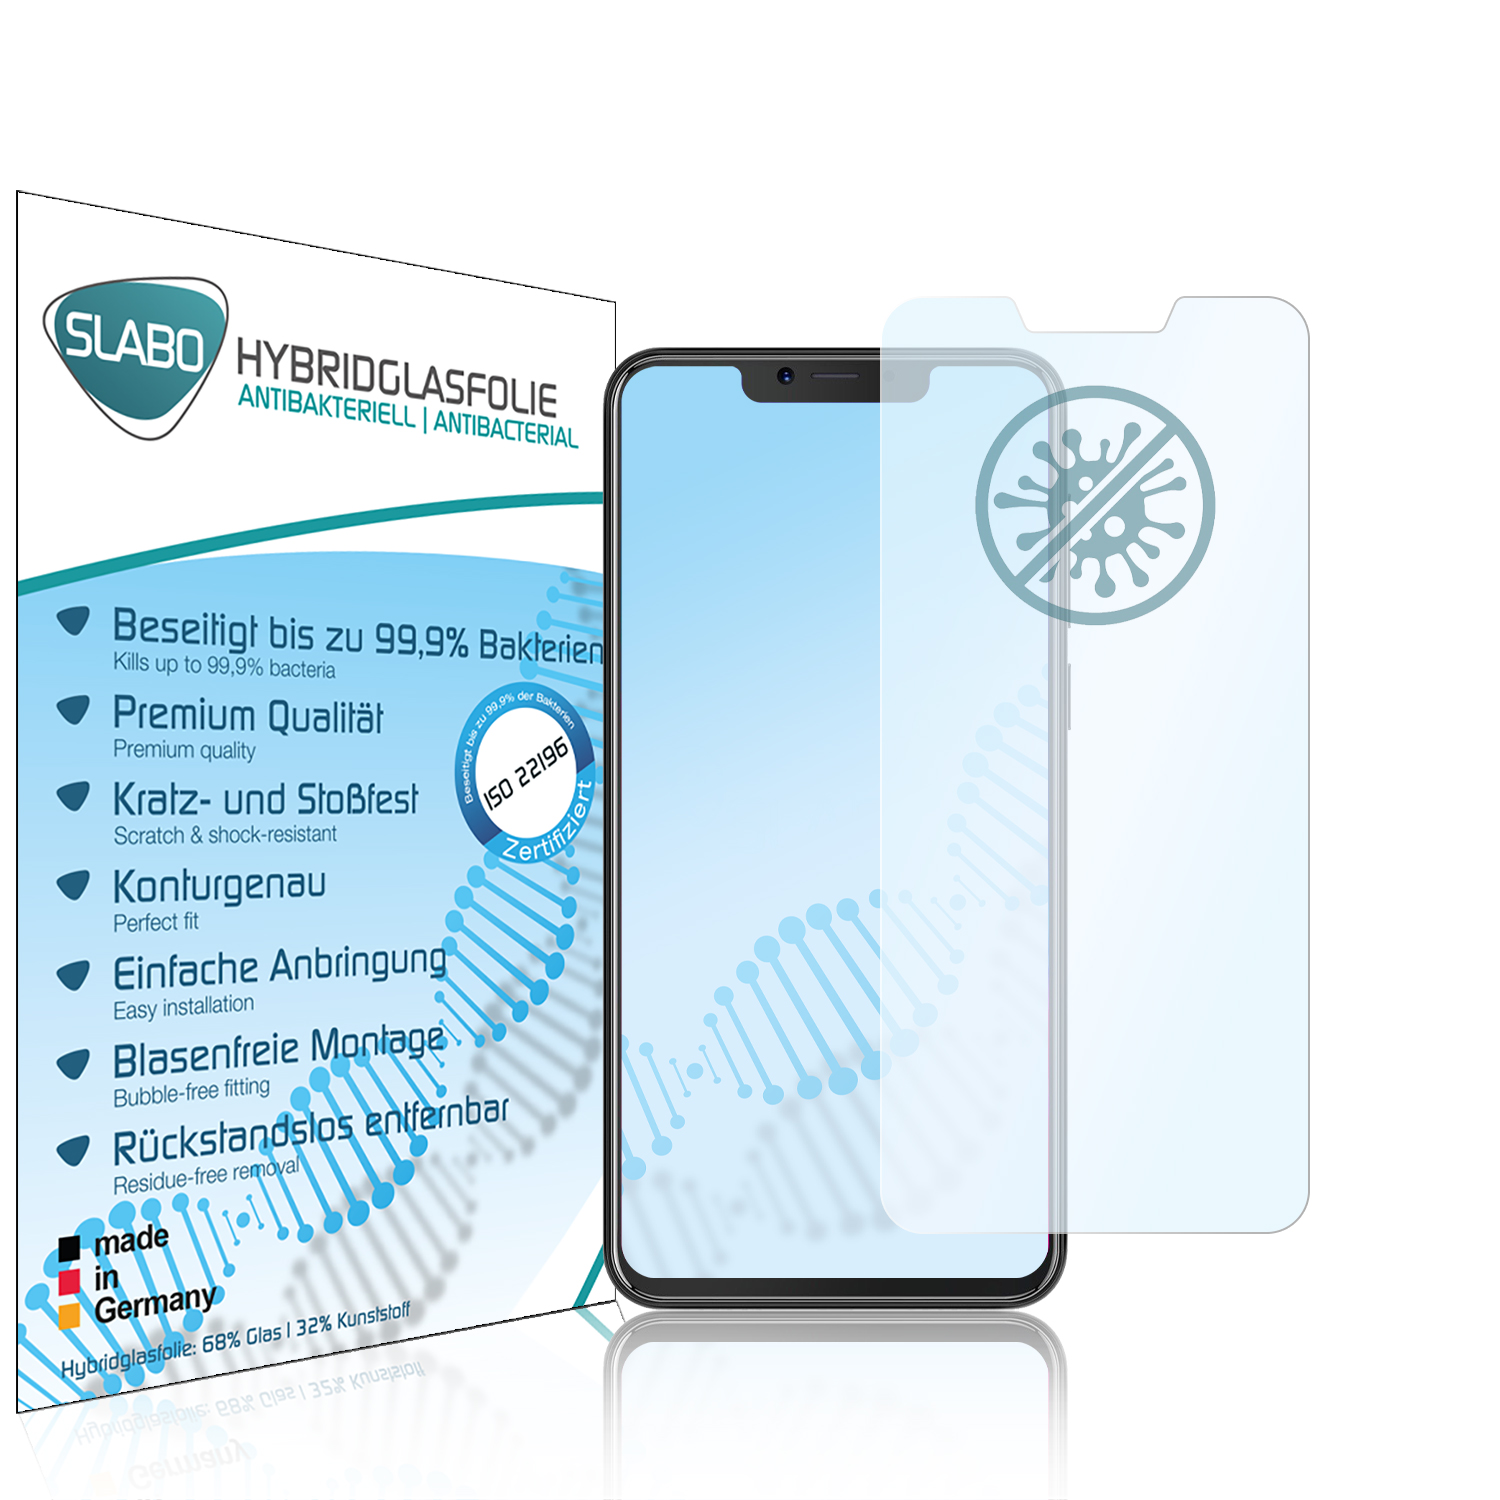 SLABO antibakterielle flexible P20) Cubot Hybridglasfolie Displayschutz(für